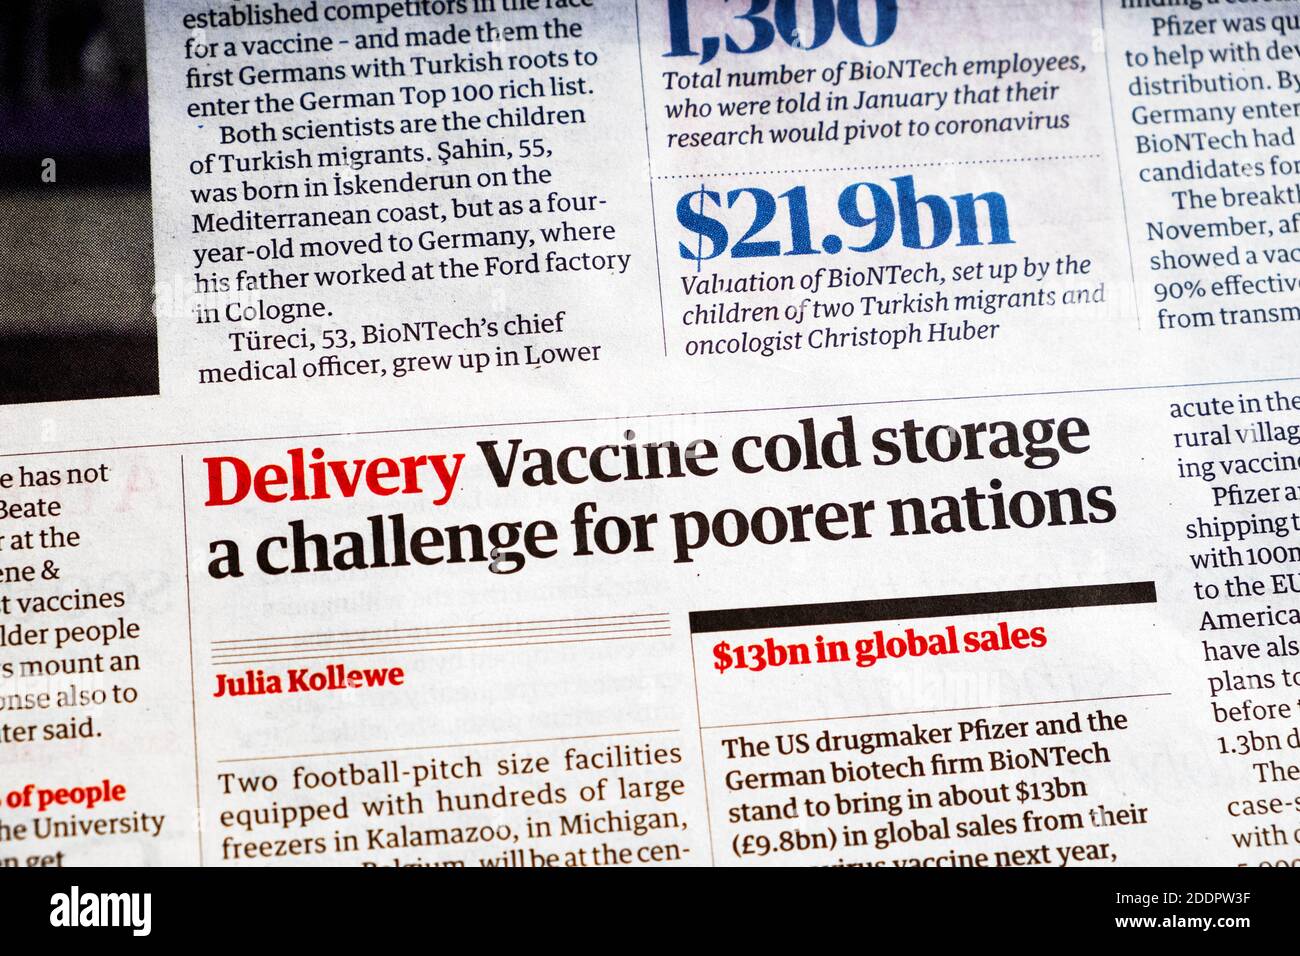 "La conservazione a freddo di vaccini di deliveny una sfida per le nazioni più povere" Covid-19 Notizie sui vaccini nei titoli dei giornali Londra Inghilterra Regno Unito 10 novembre 2020 Foto Stock